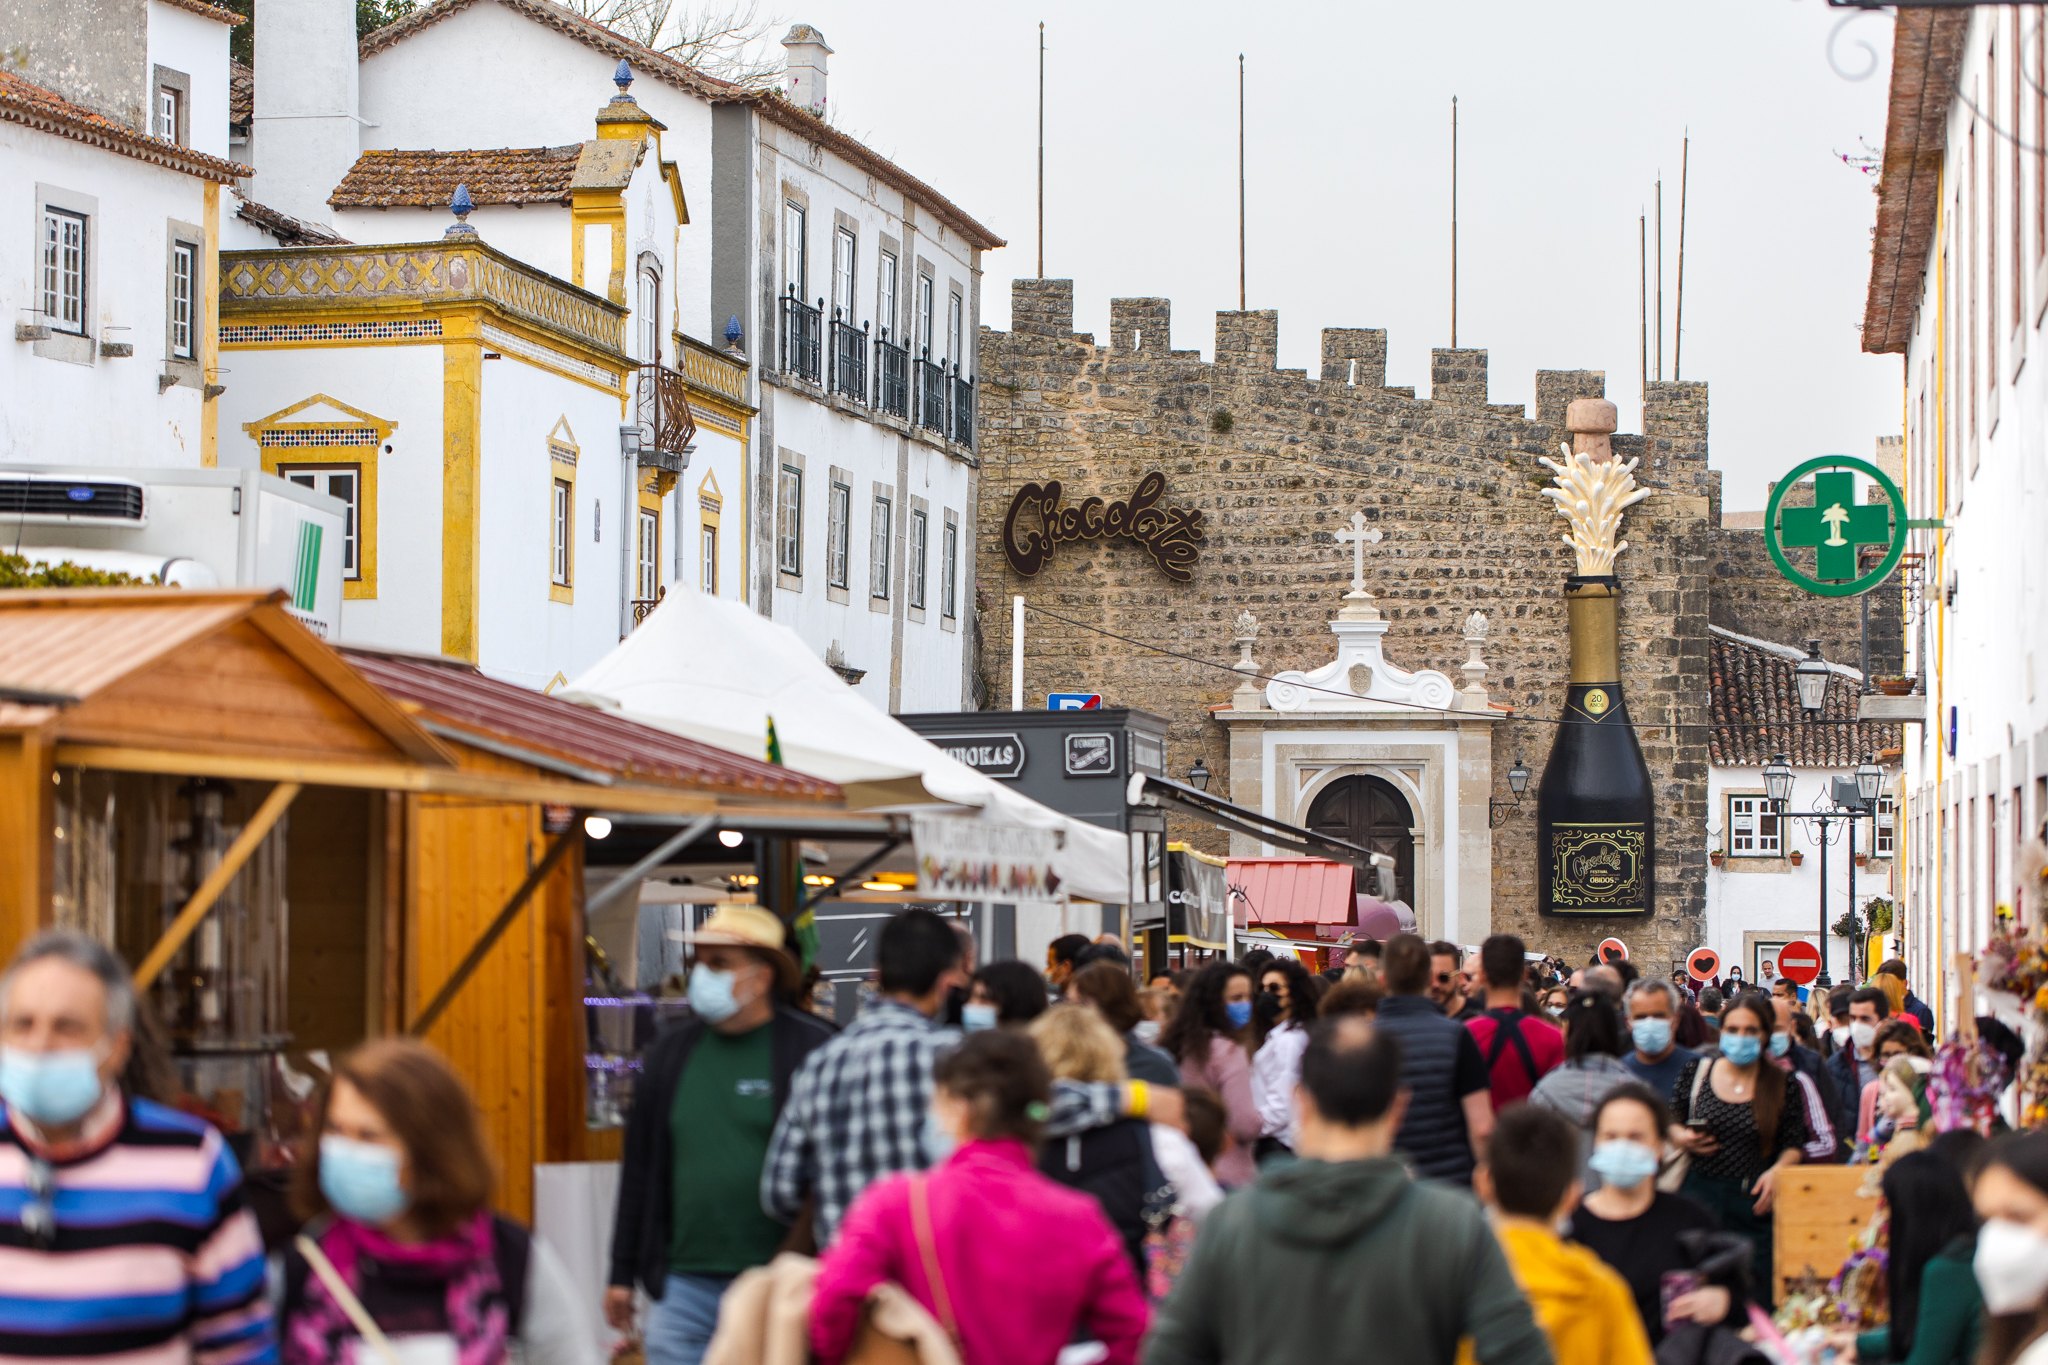 “Foi muito bom voltar a ver as ruas de Óbidos cheias de visitantes”